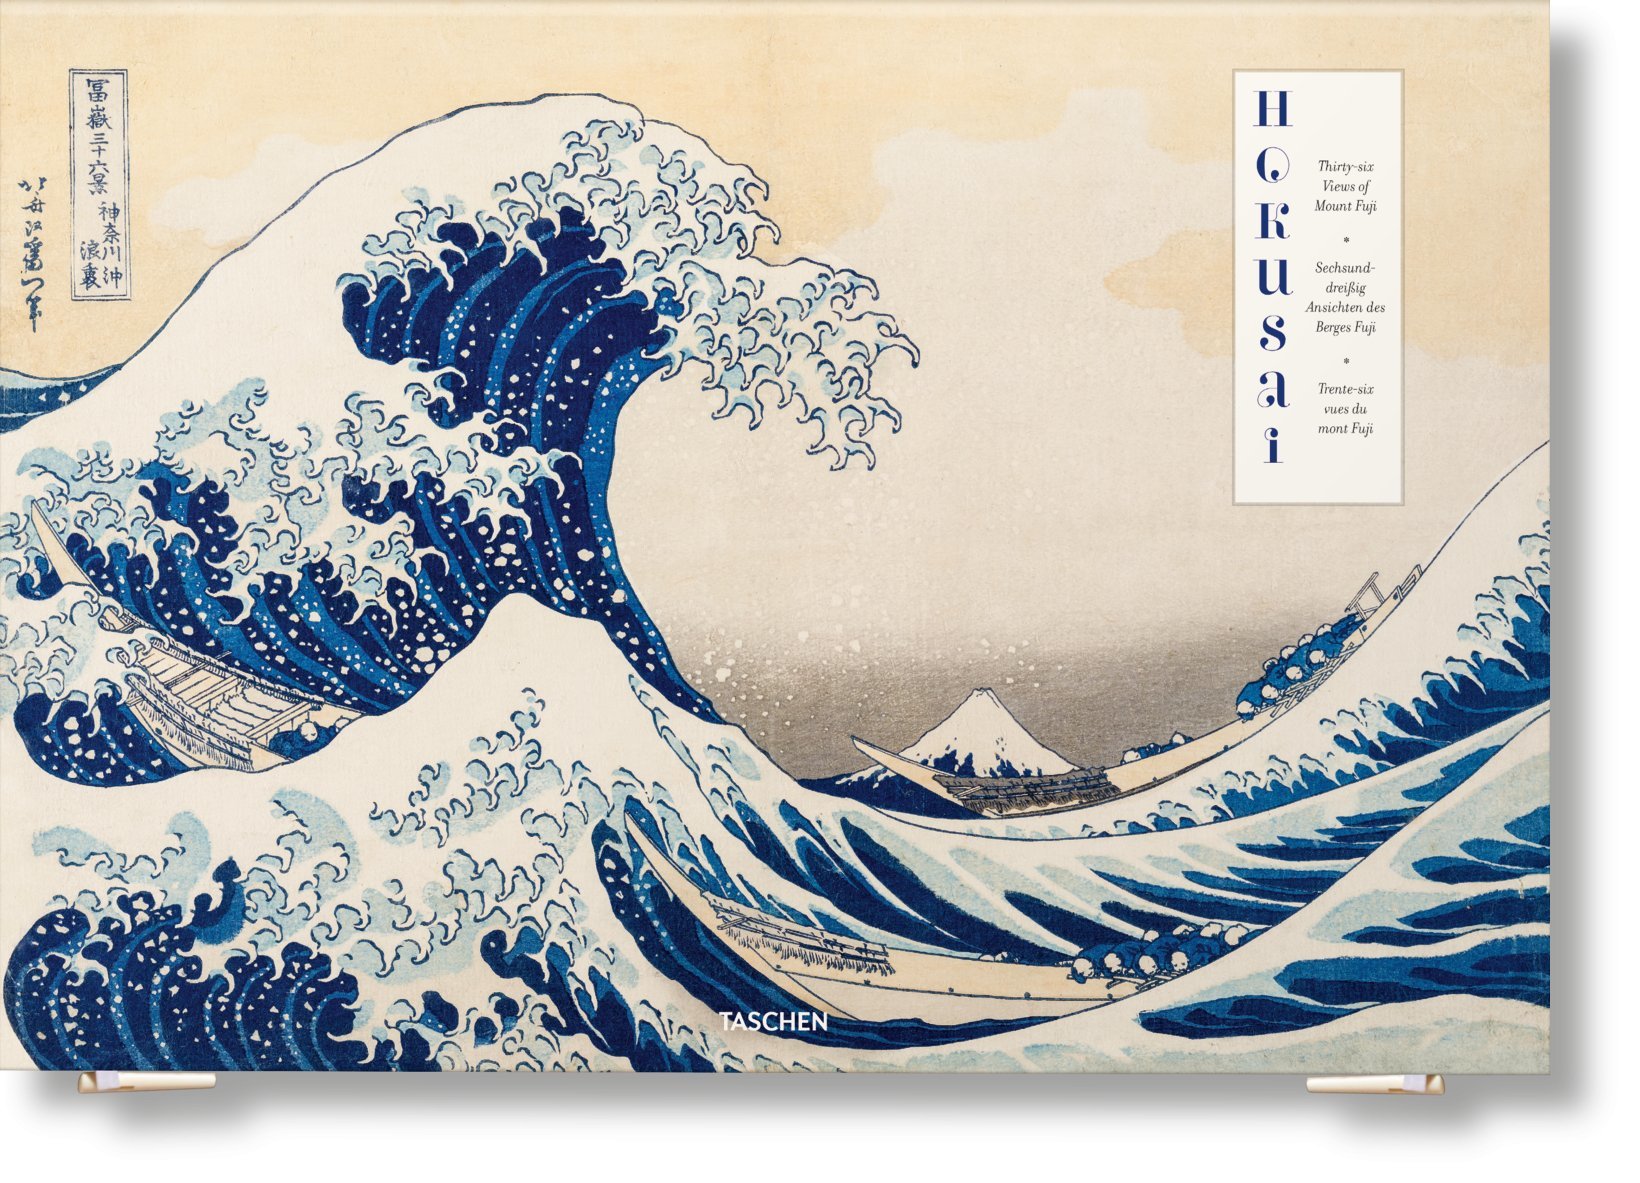 Les 36 vues du Mont Fuji de Hokusaï sort dans une nouvelle édition chez Taschen.